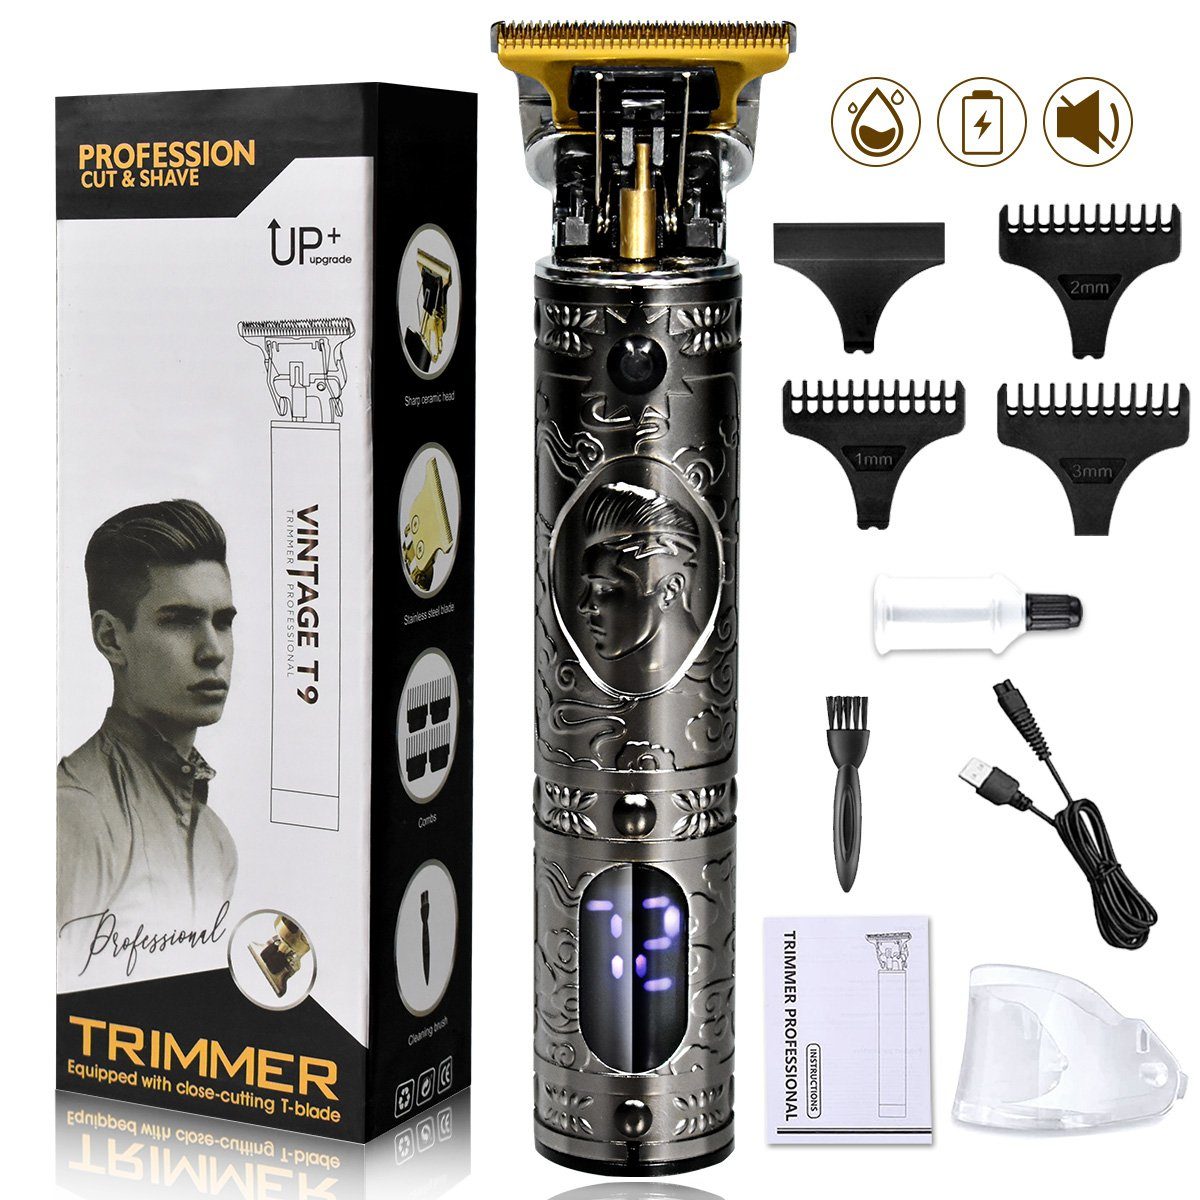 und Haircut Bartschneider Haarschneider Haar- Elektrischer Haarschneidemaschine, 1200mAh, Display, Silber LCD 7Magic Profi